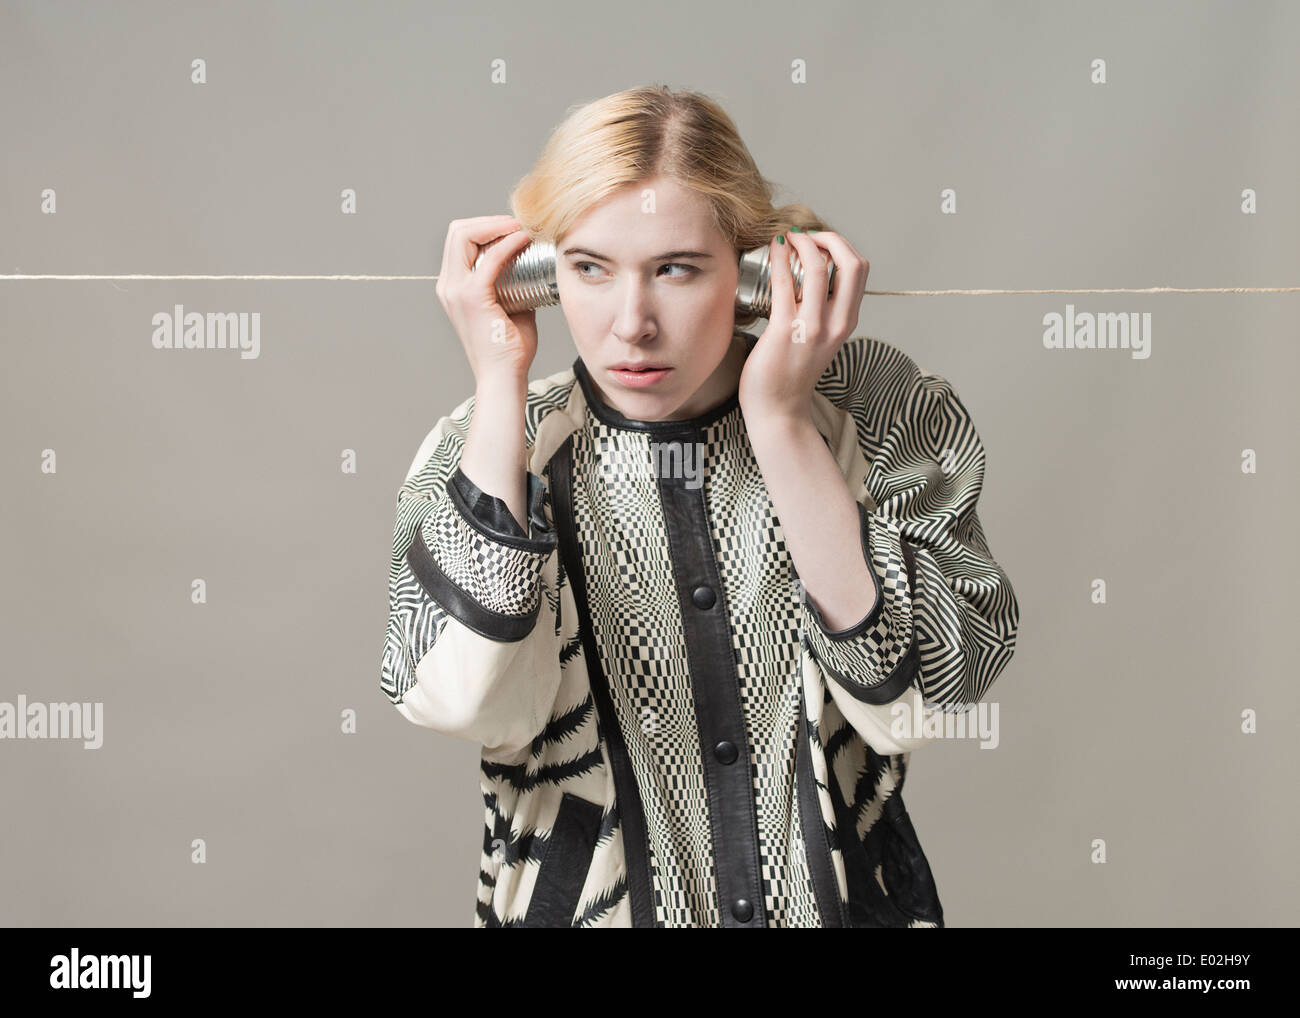 Donna bionda ascolto con stagno possono telefonare a. Immagine concettuale di spionaggio, sorveglianza e comunicazione. Foto Stock